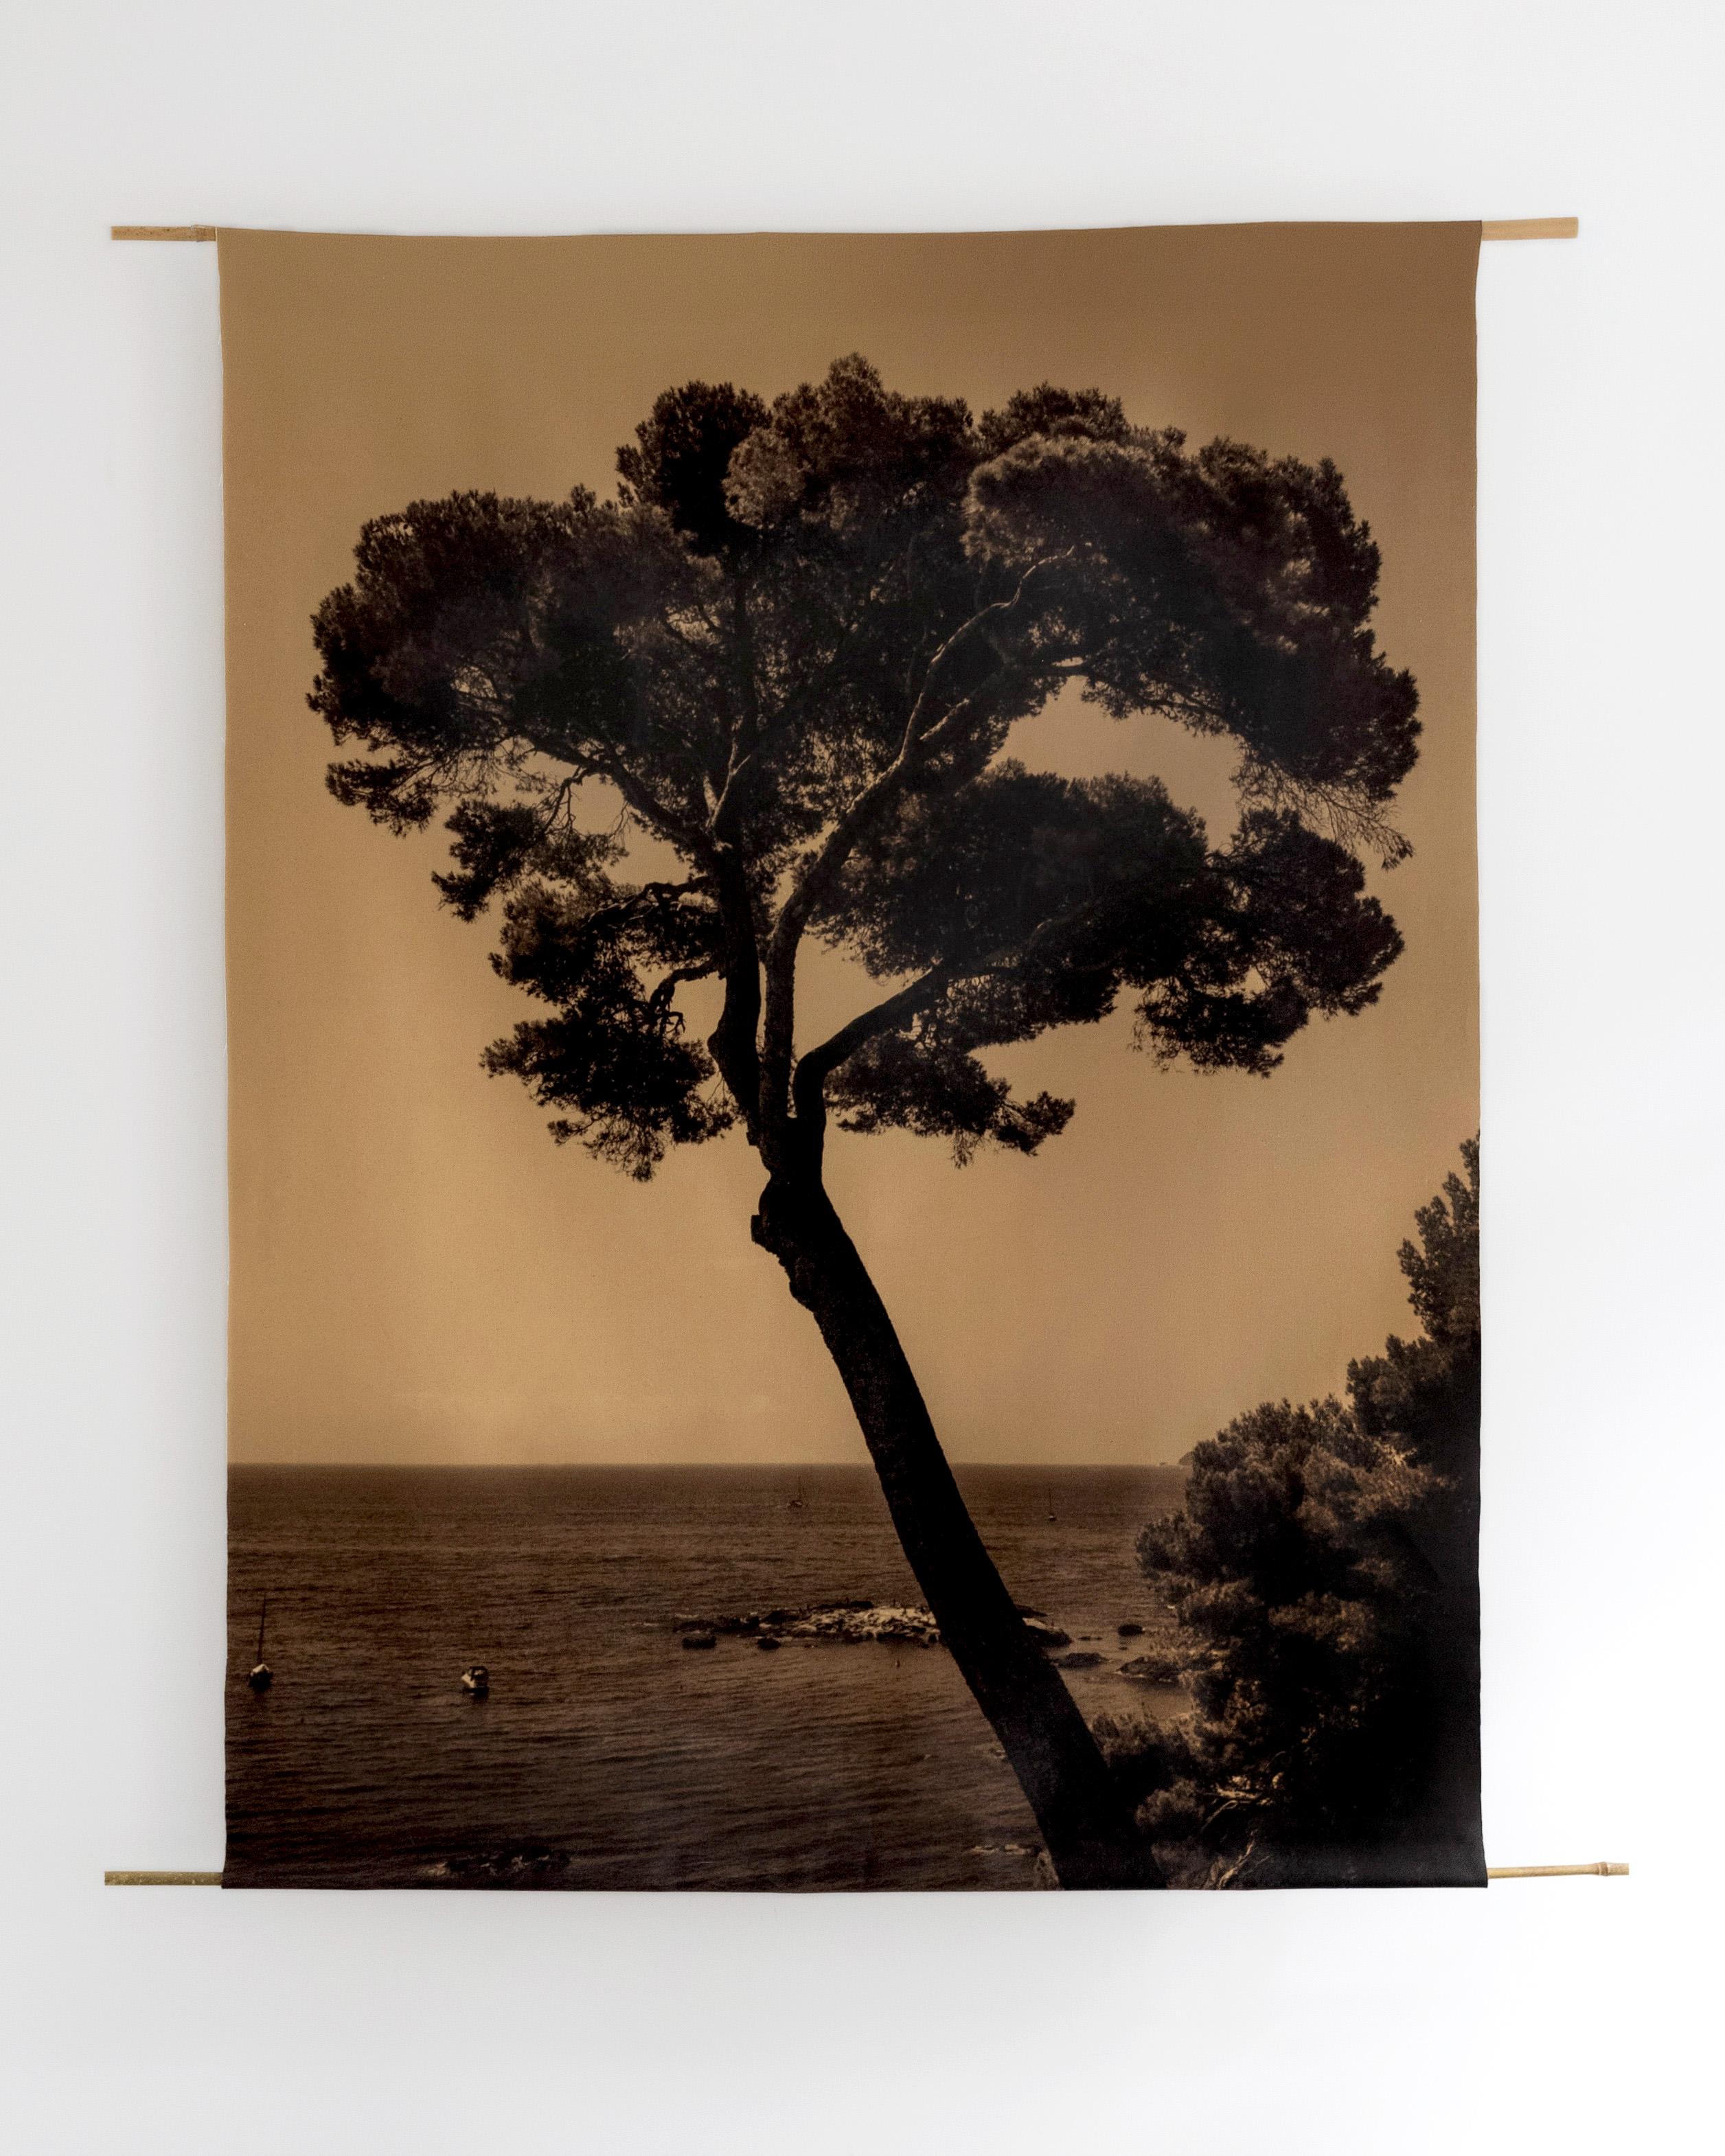 Ugne Pouwell Landscape Photograph – Prevail-organic Baumwoll-Leinwand scroll auf Bambus 120x96cm Limitierte Auflage 2 von 5 Stück. 